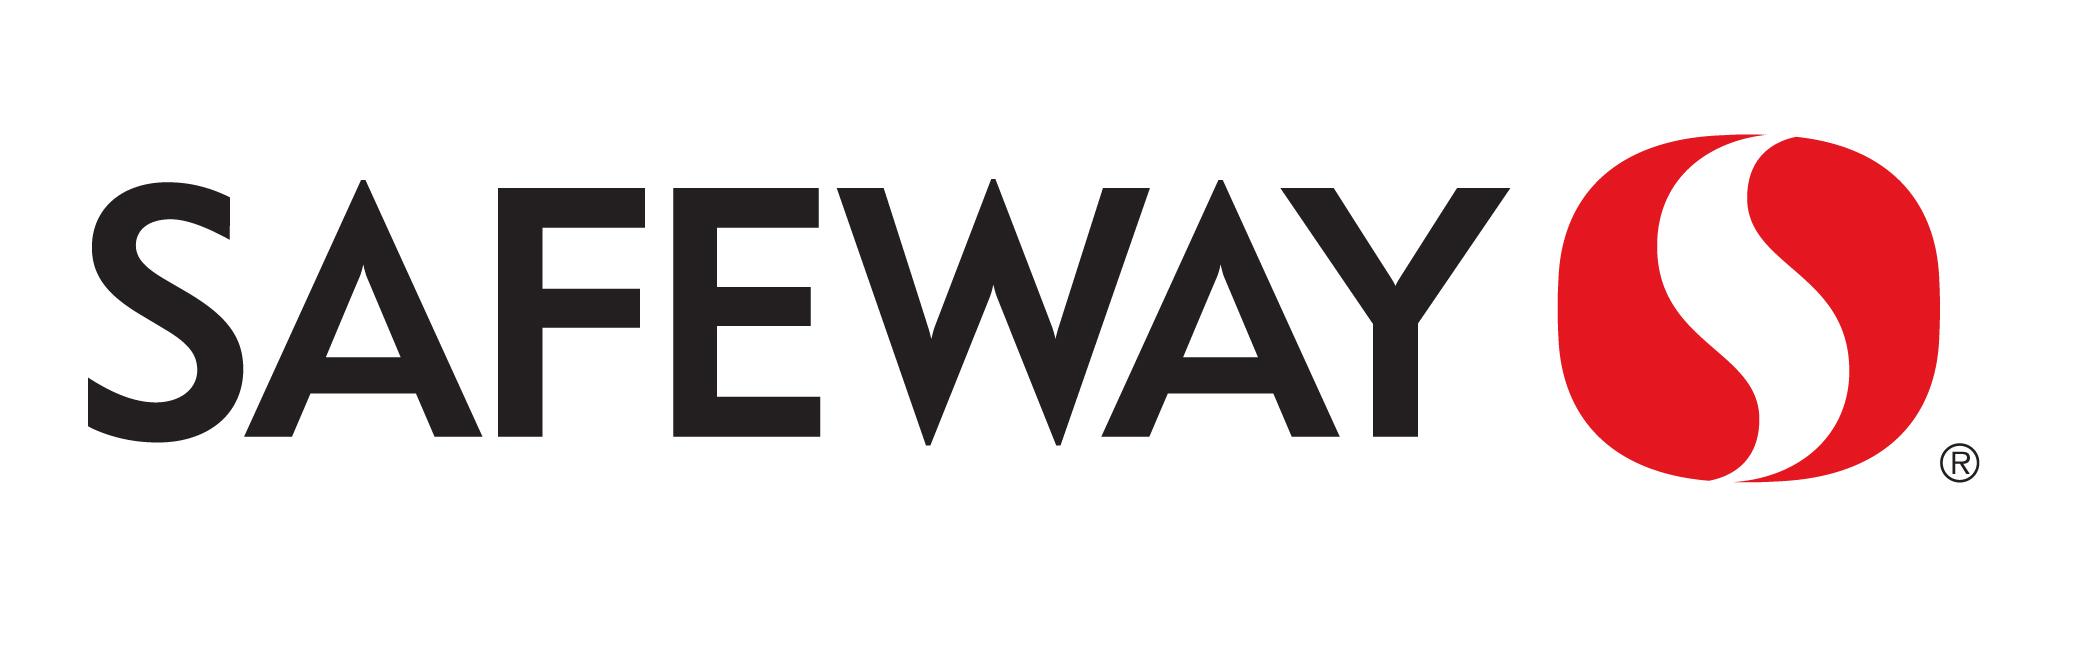 Safeway Logo - Safeway-Logo - Congressional School